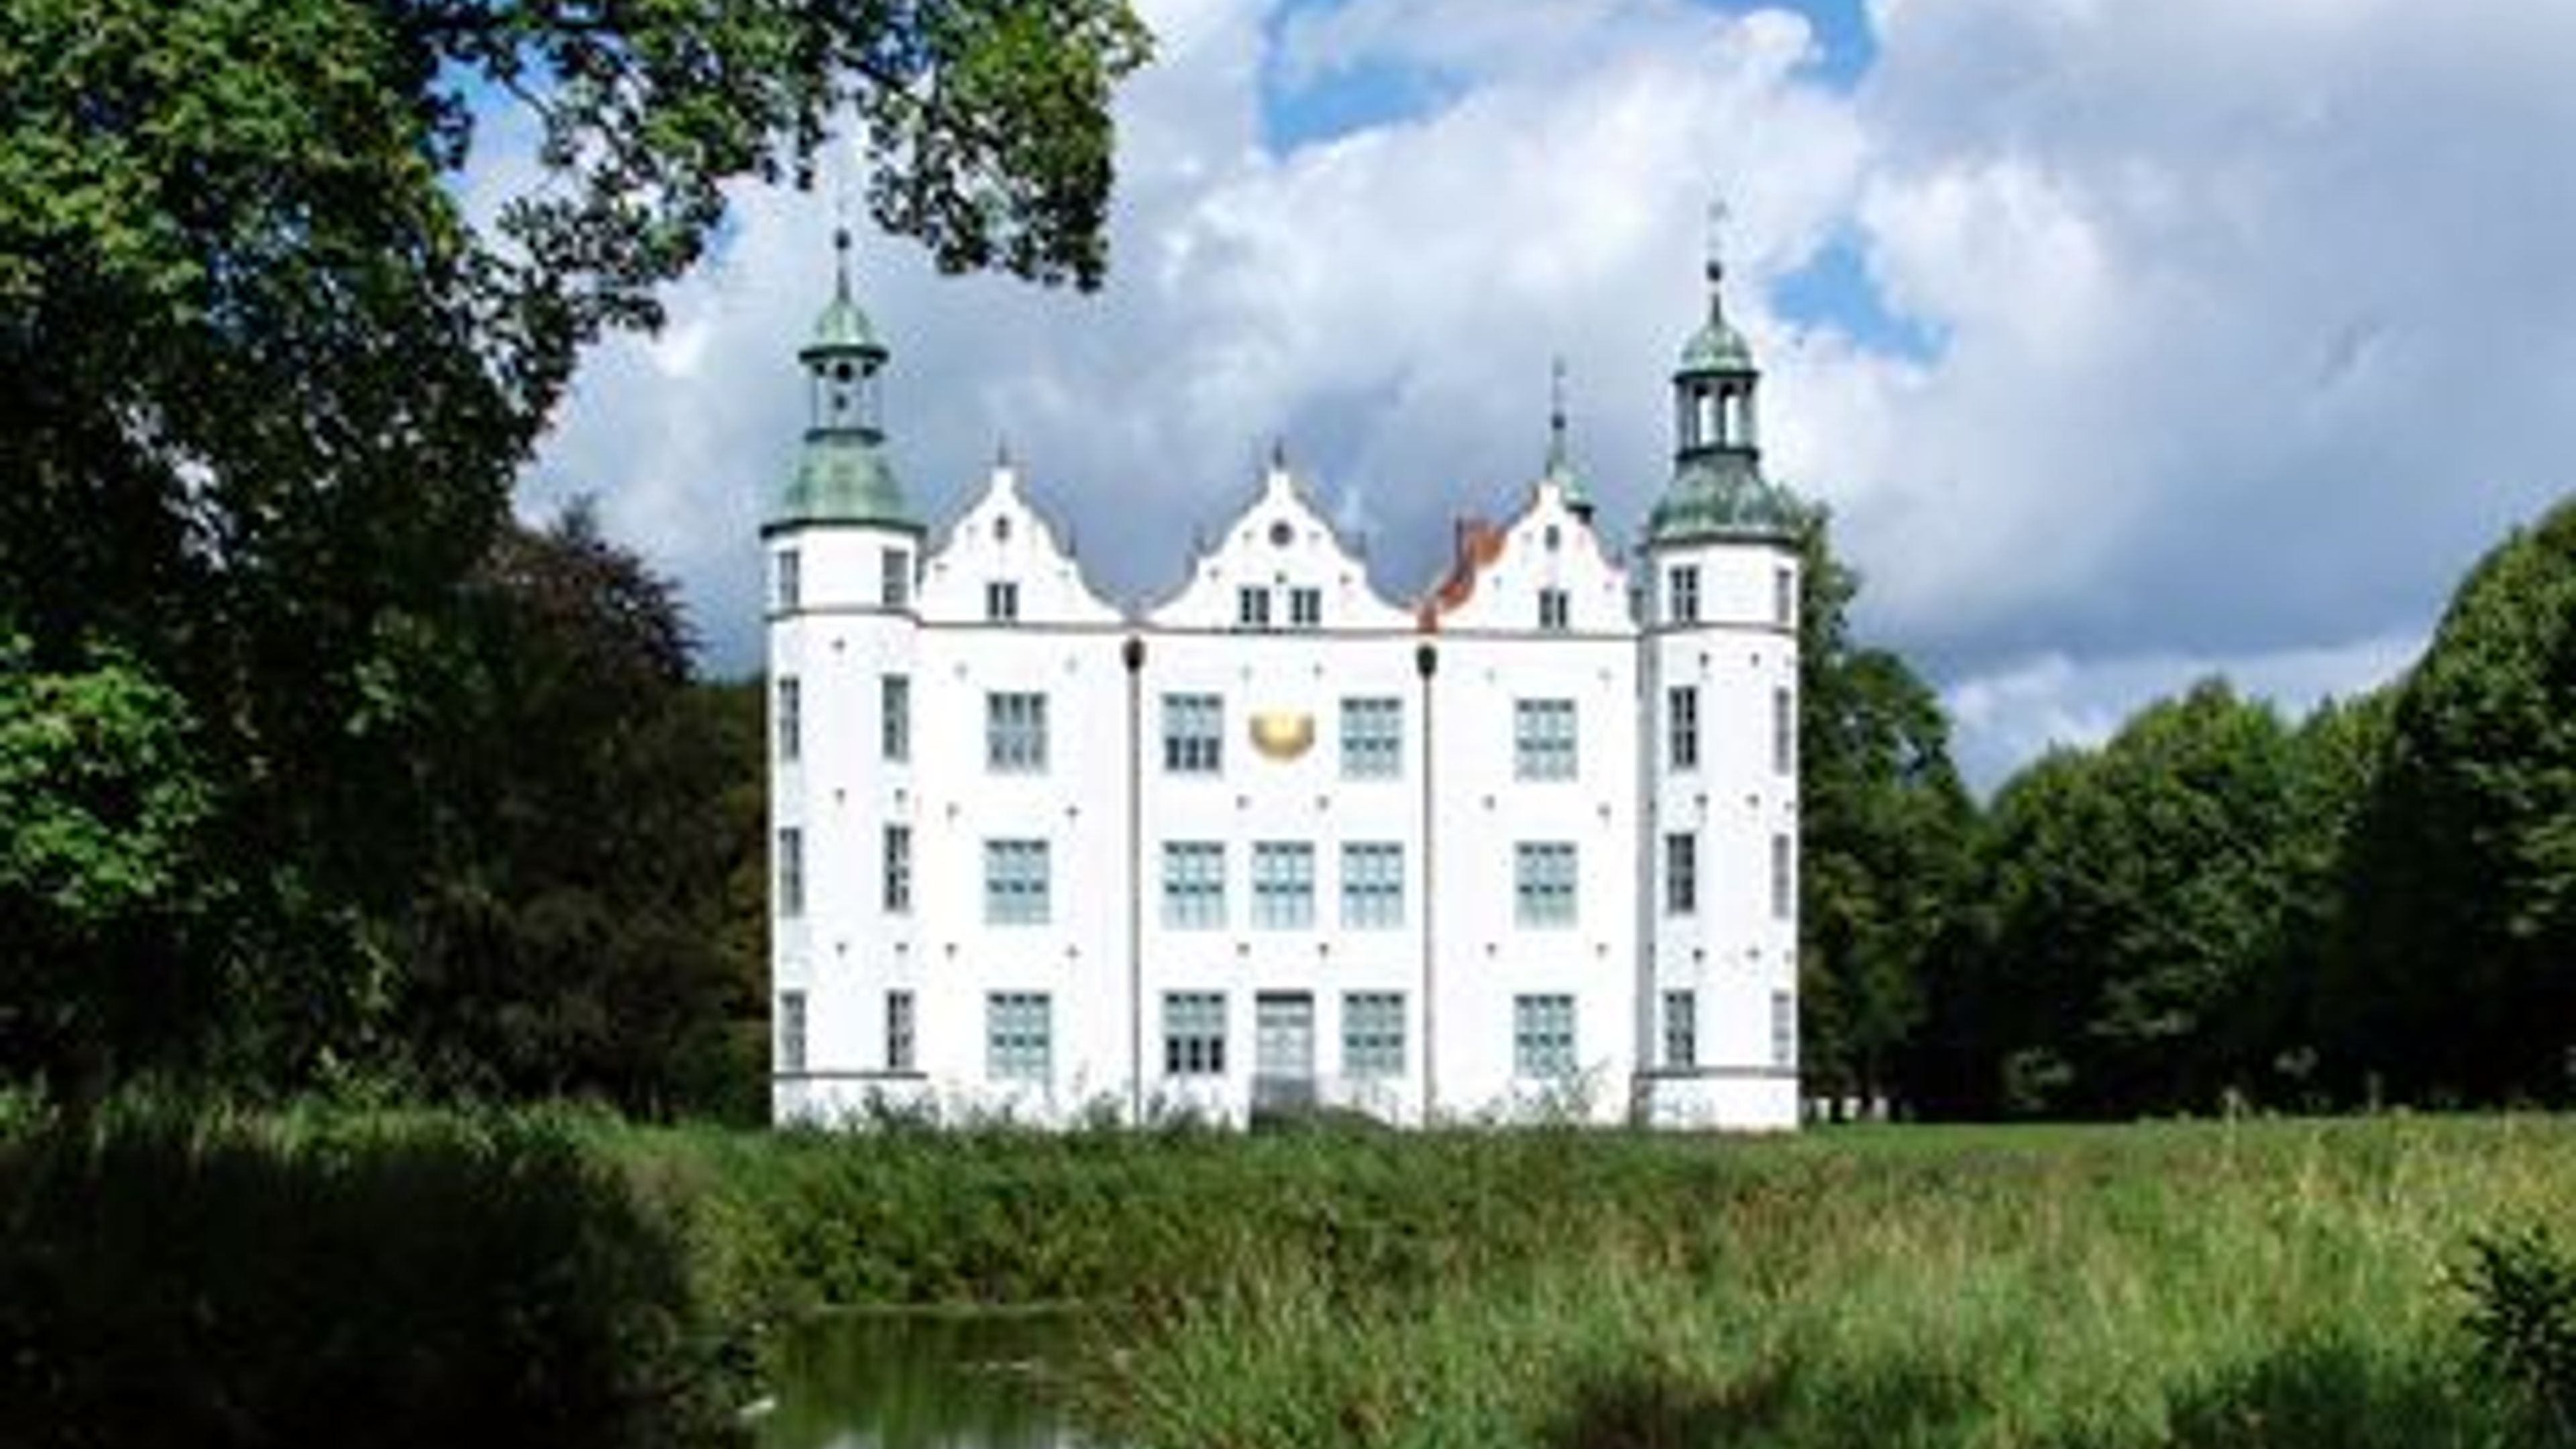 Hotel am Schloss Ahrensburg